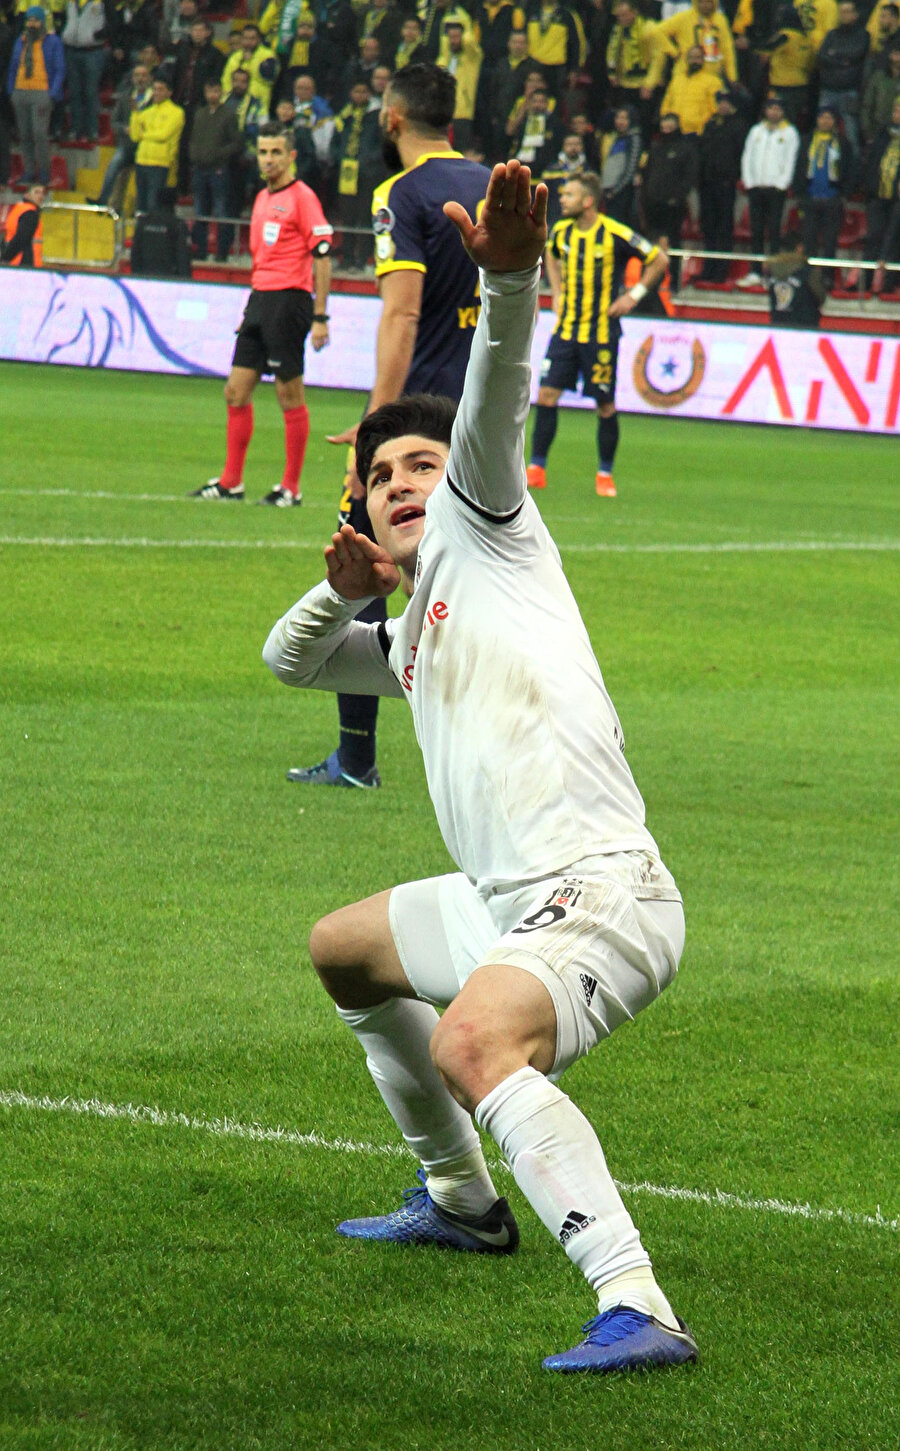 Beşiktaş forması giyen Güven Yalçın attığı golün sevincini 'okçu' işareti yaparak yaşadı.